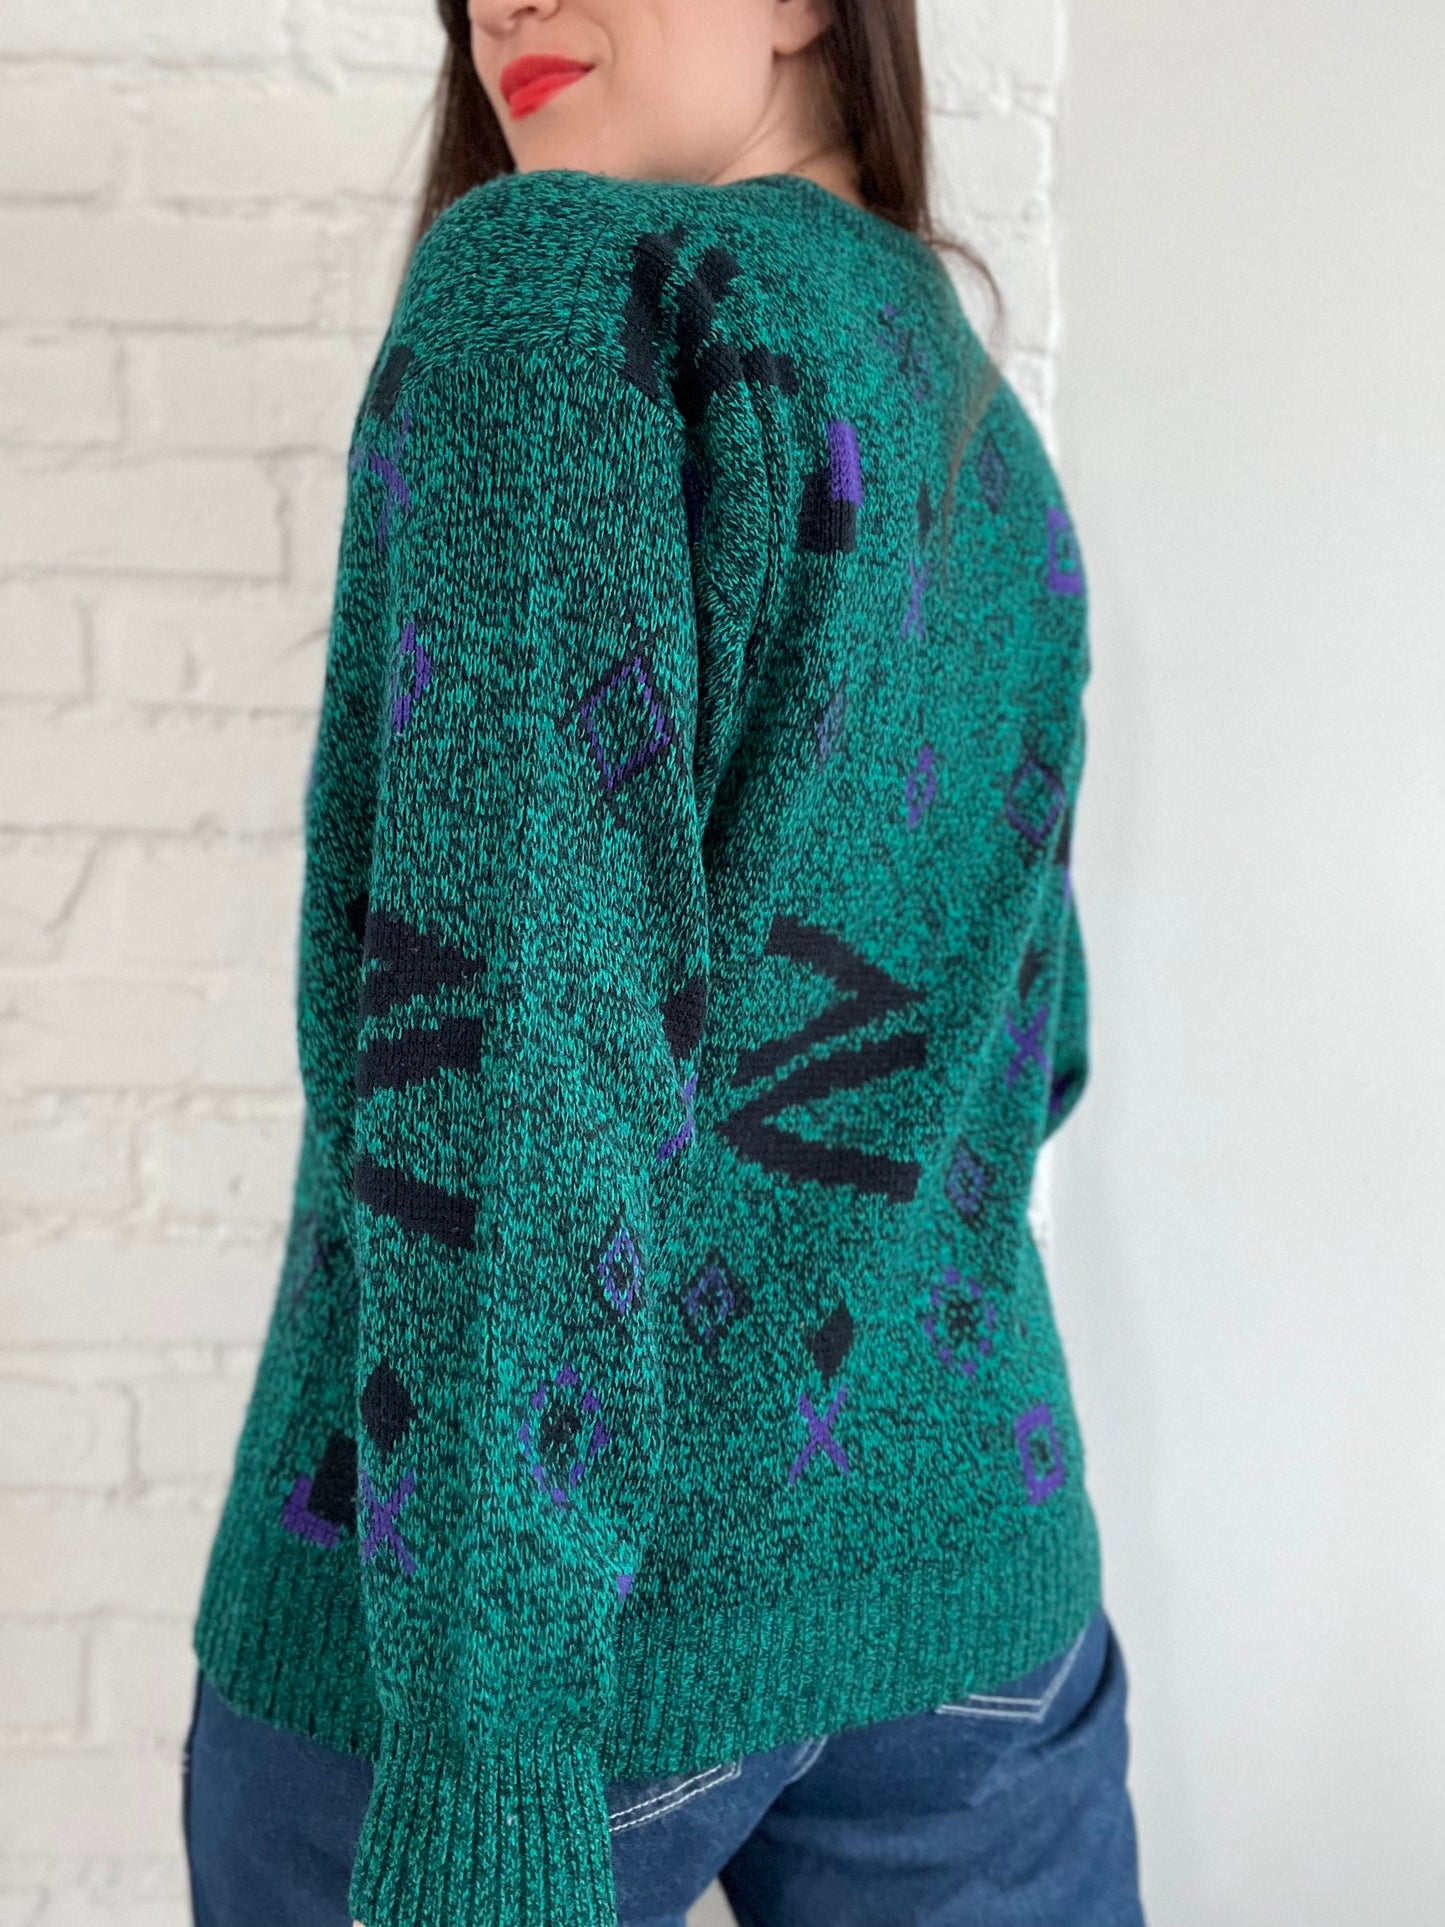 90s Retro Knit Sweater - L